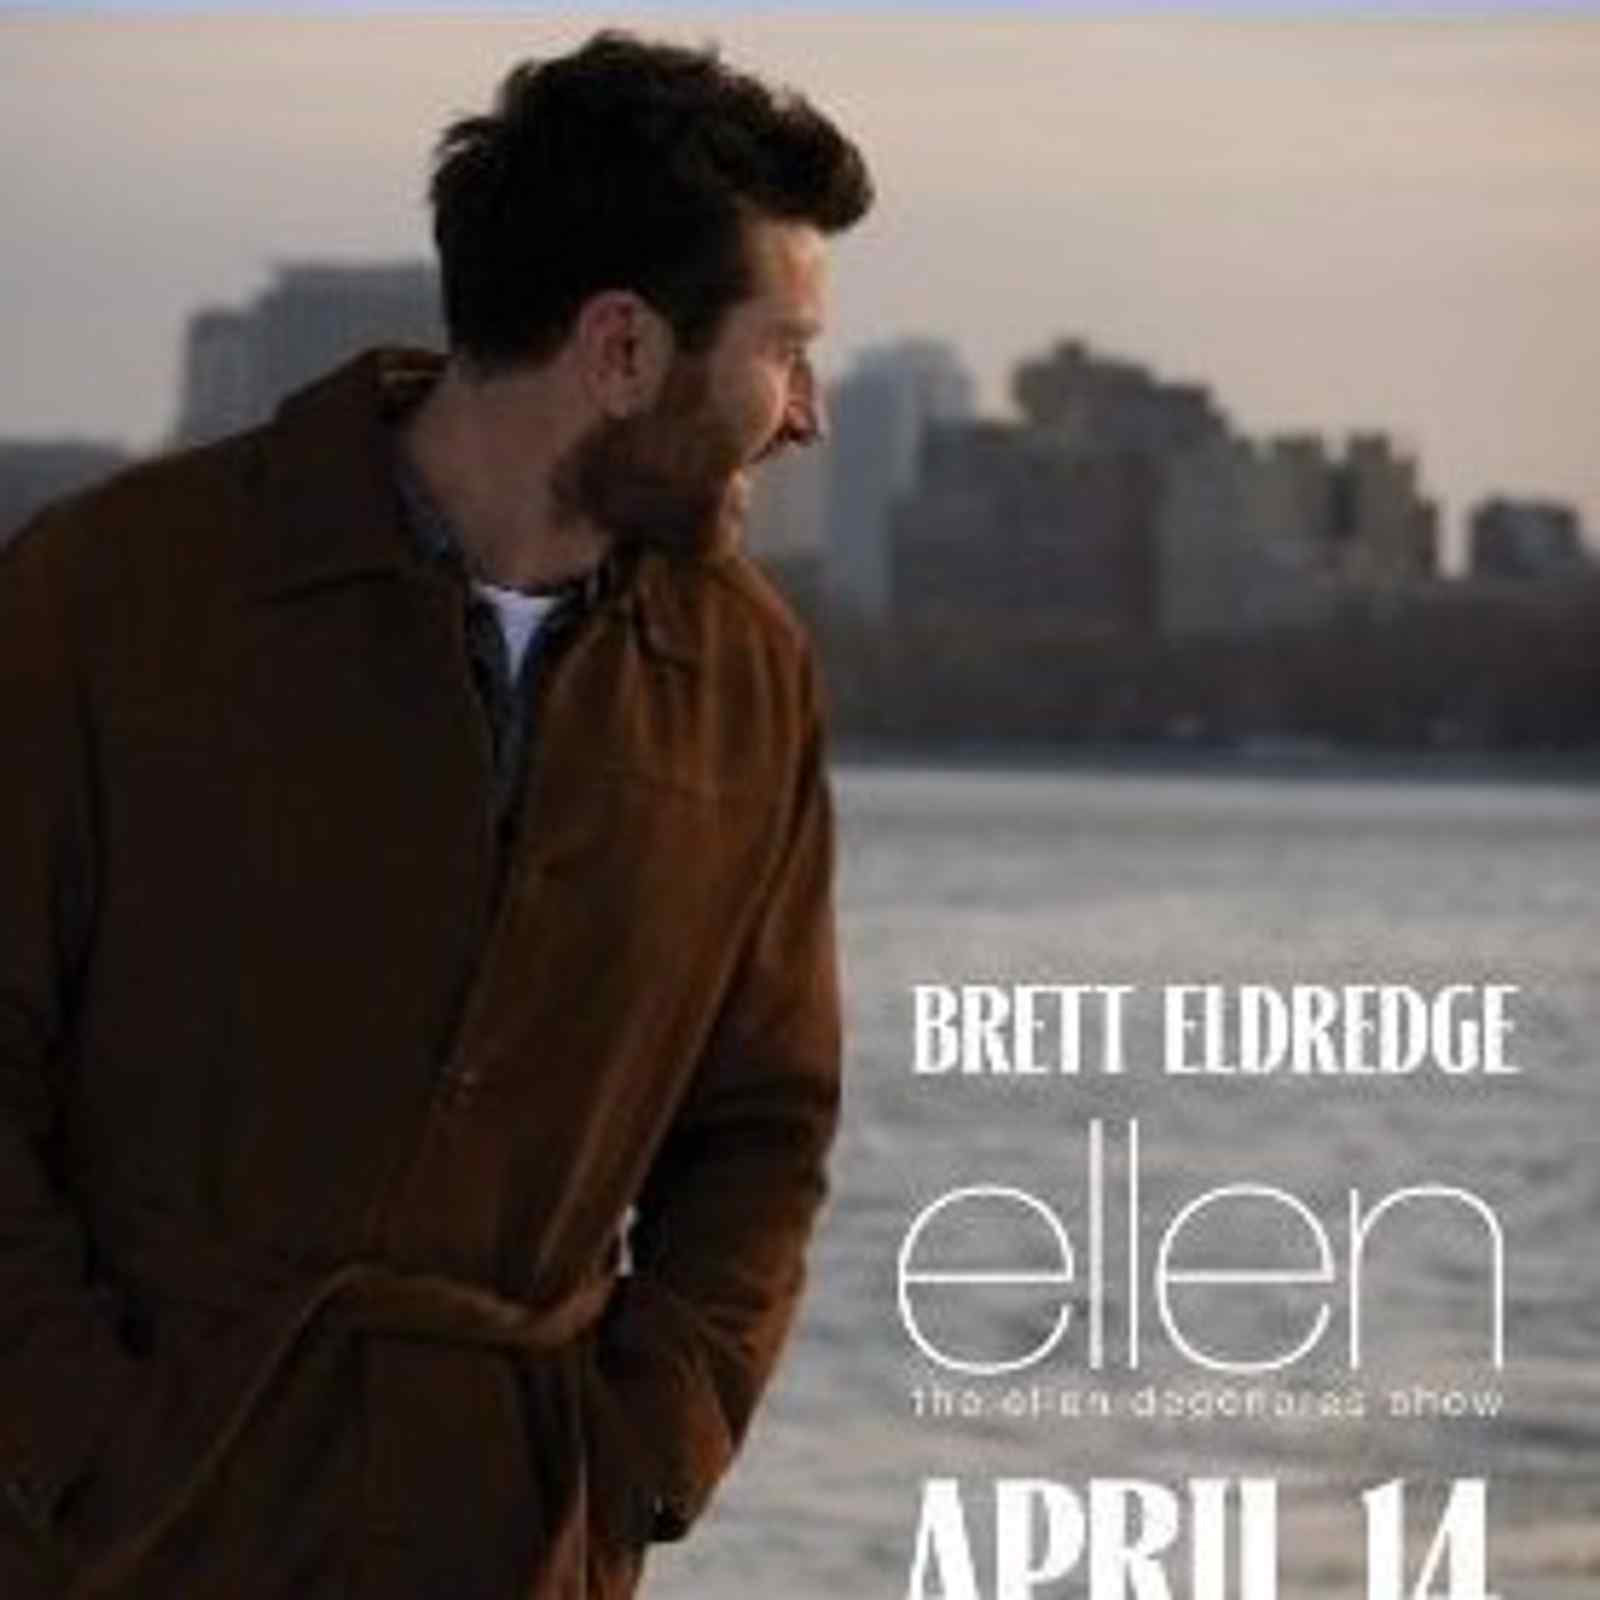 The Ellen Degeneres Show: Brett Eldredge